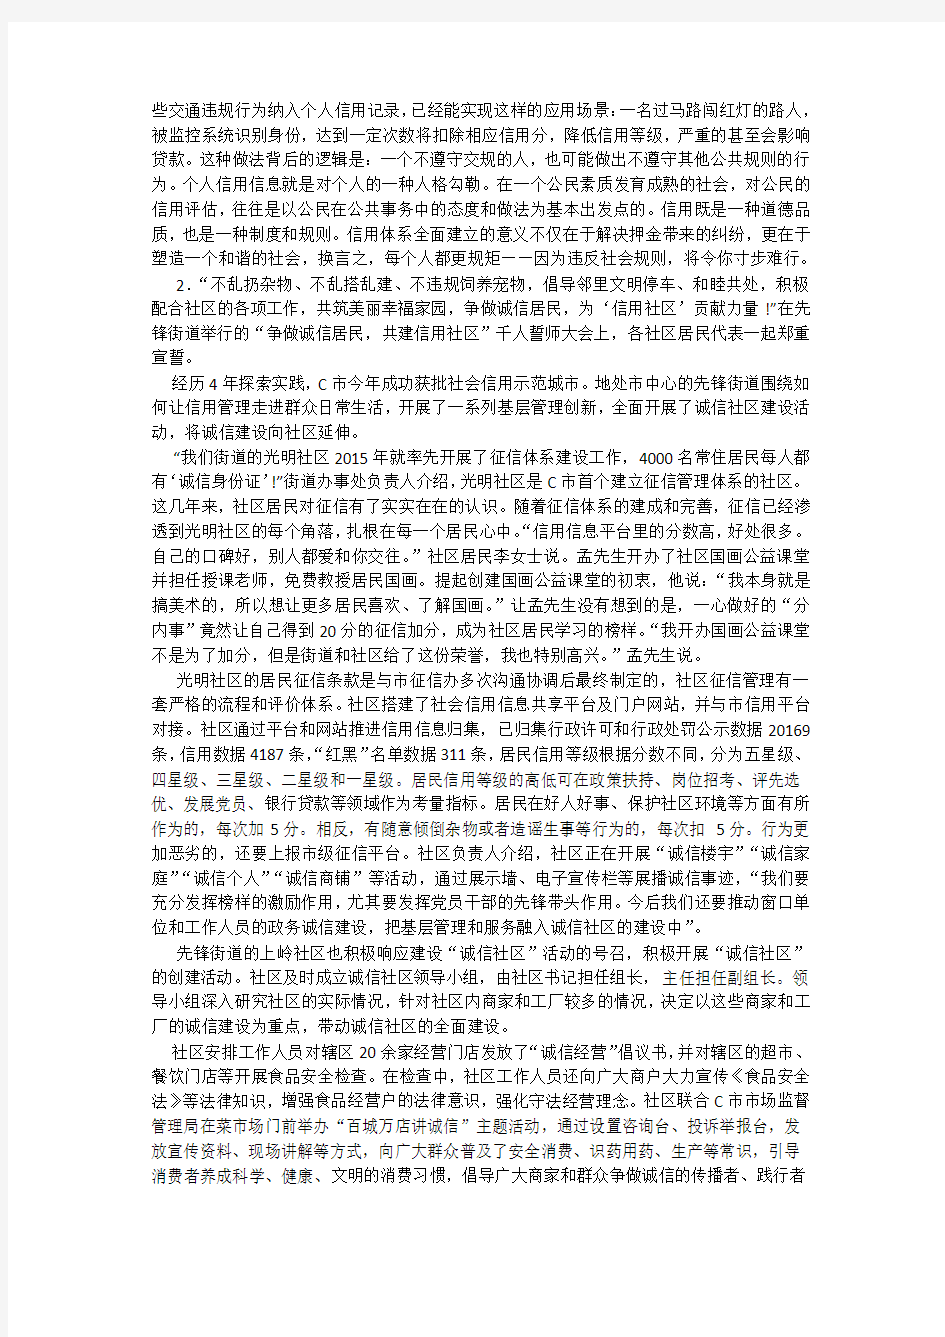 2019年上半年重庆市公务员考试申论真题及答案解析(2)